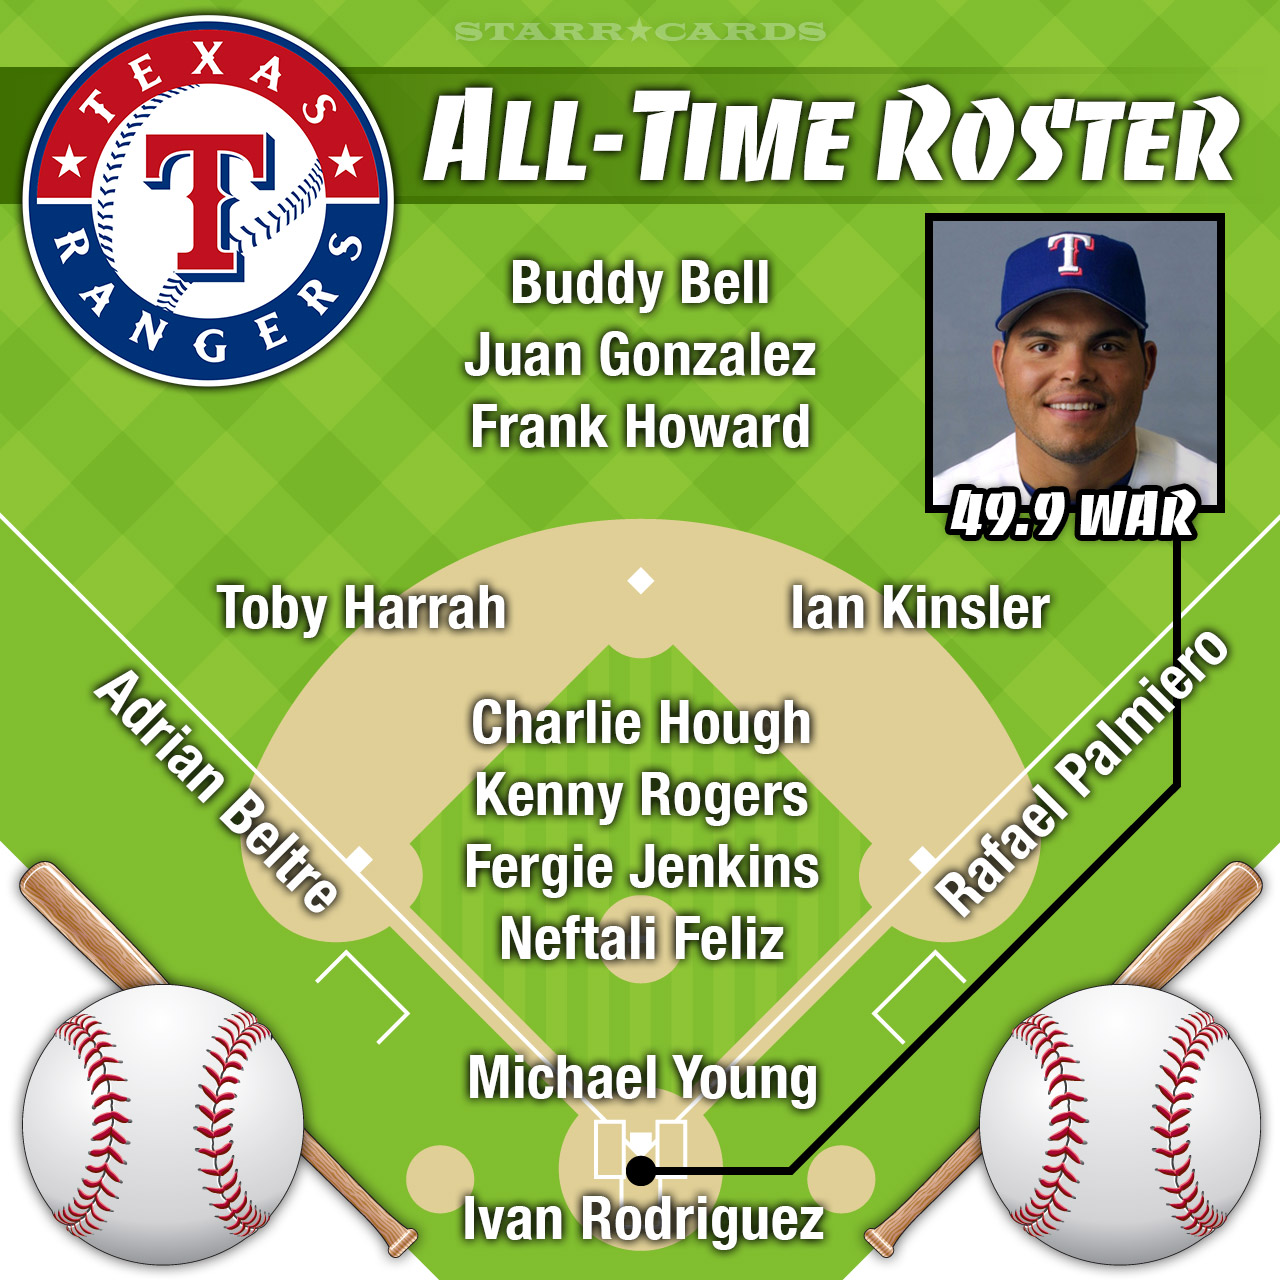 Ivan Pudge Rodriguez - Texas Rangers  Mlb texas rangers, Texas rangers  players, Texas rangers